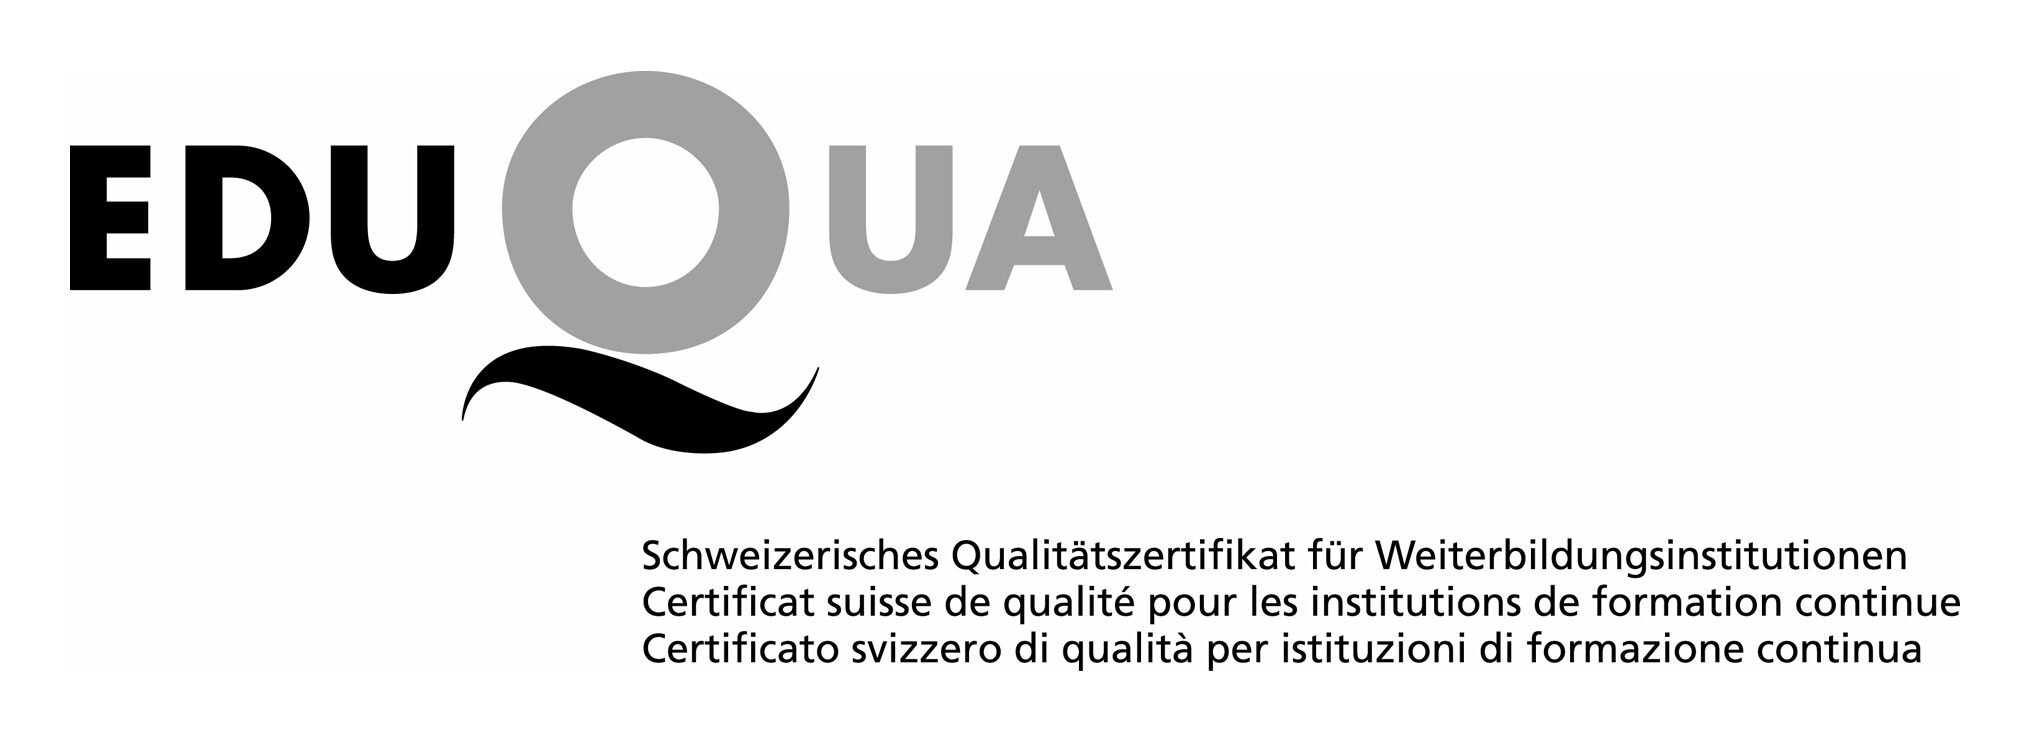 Logo EDUQUA - Schweizerisches Qualitätszertifikat für Weiterbildungsinstitutionen